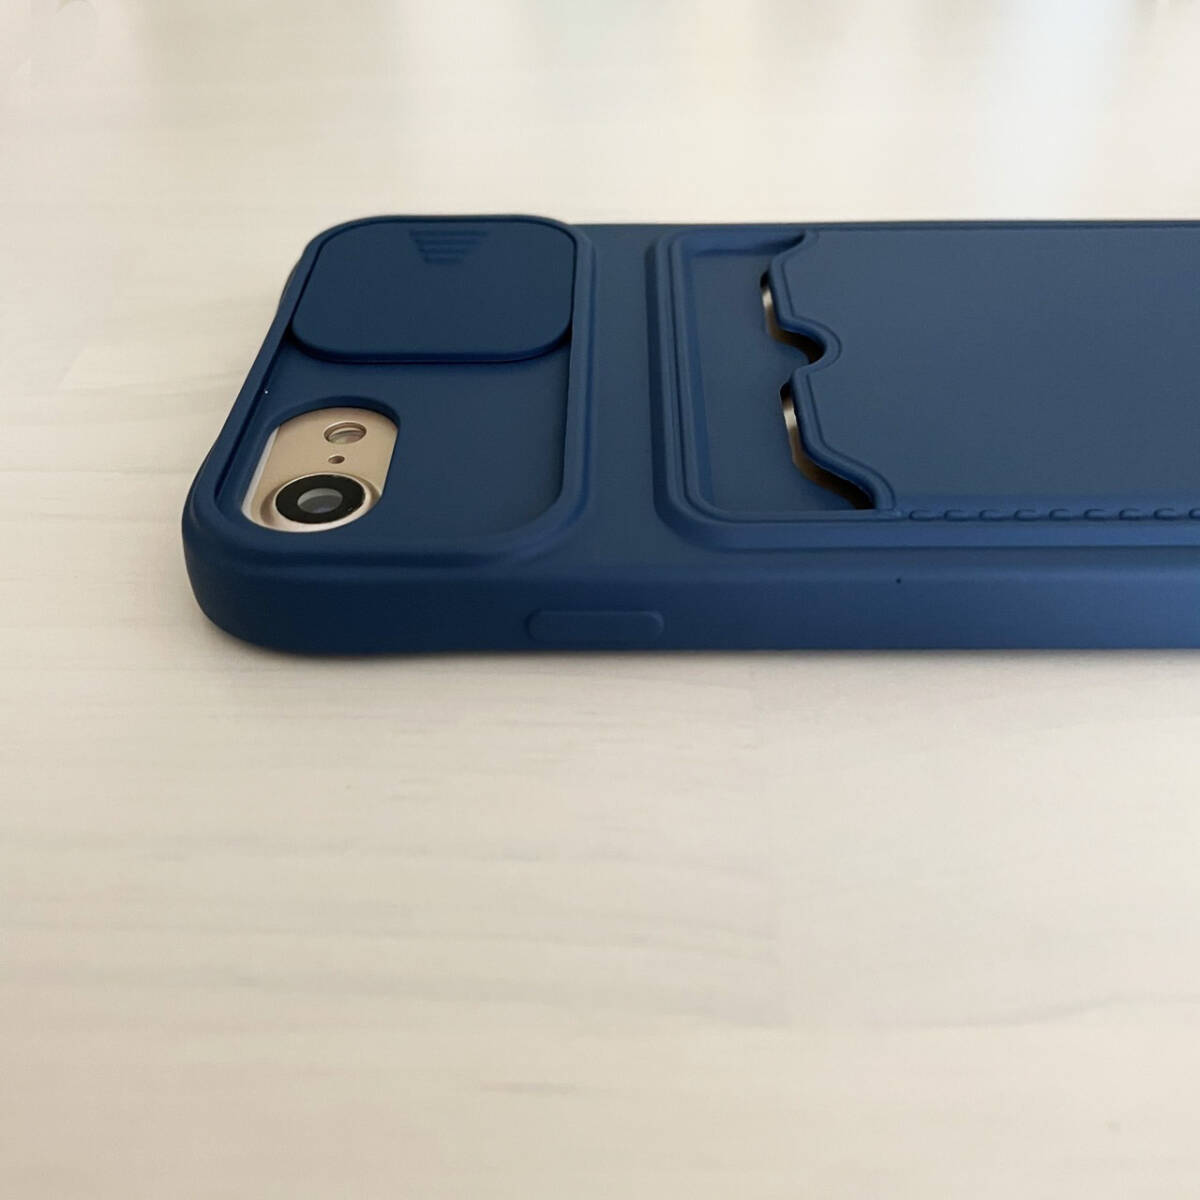 iPhone 6 6s 7 8 SE (第2世代/第3世代) SE2 SE3 ケース シリコン スマホ ショルダー 肩掛け 紐付き 収納 ネイビー 紺色 アイフォン_画像3